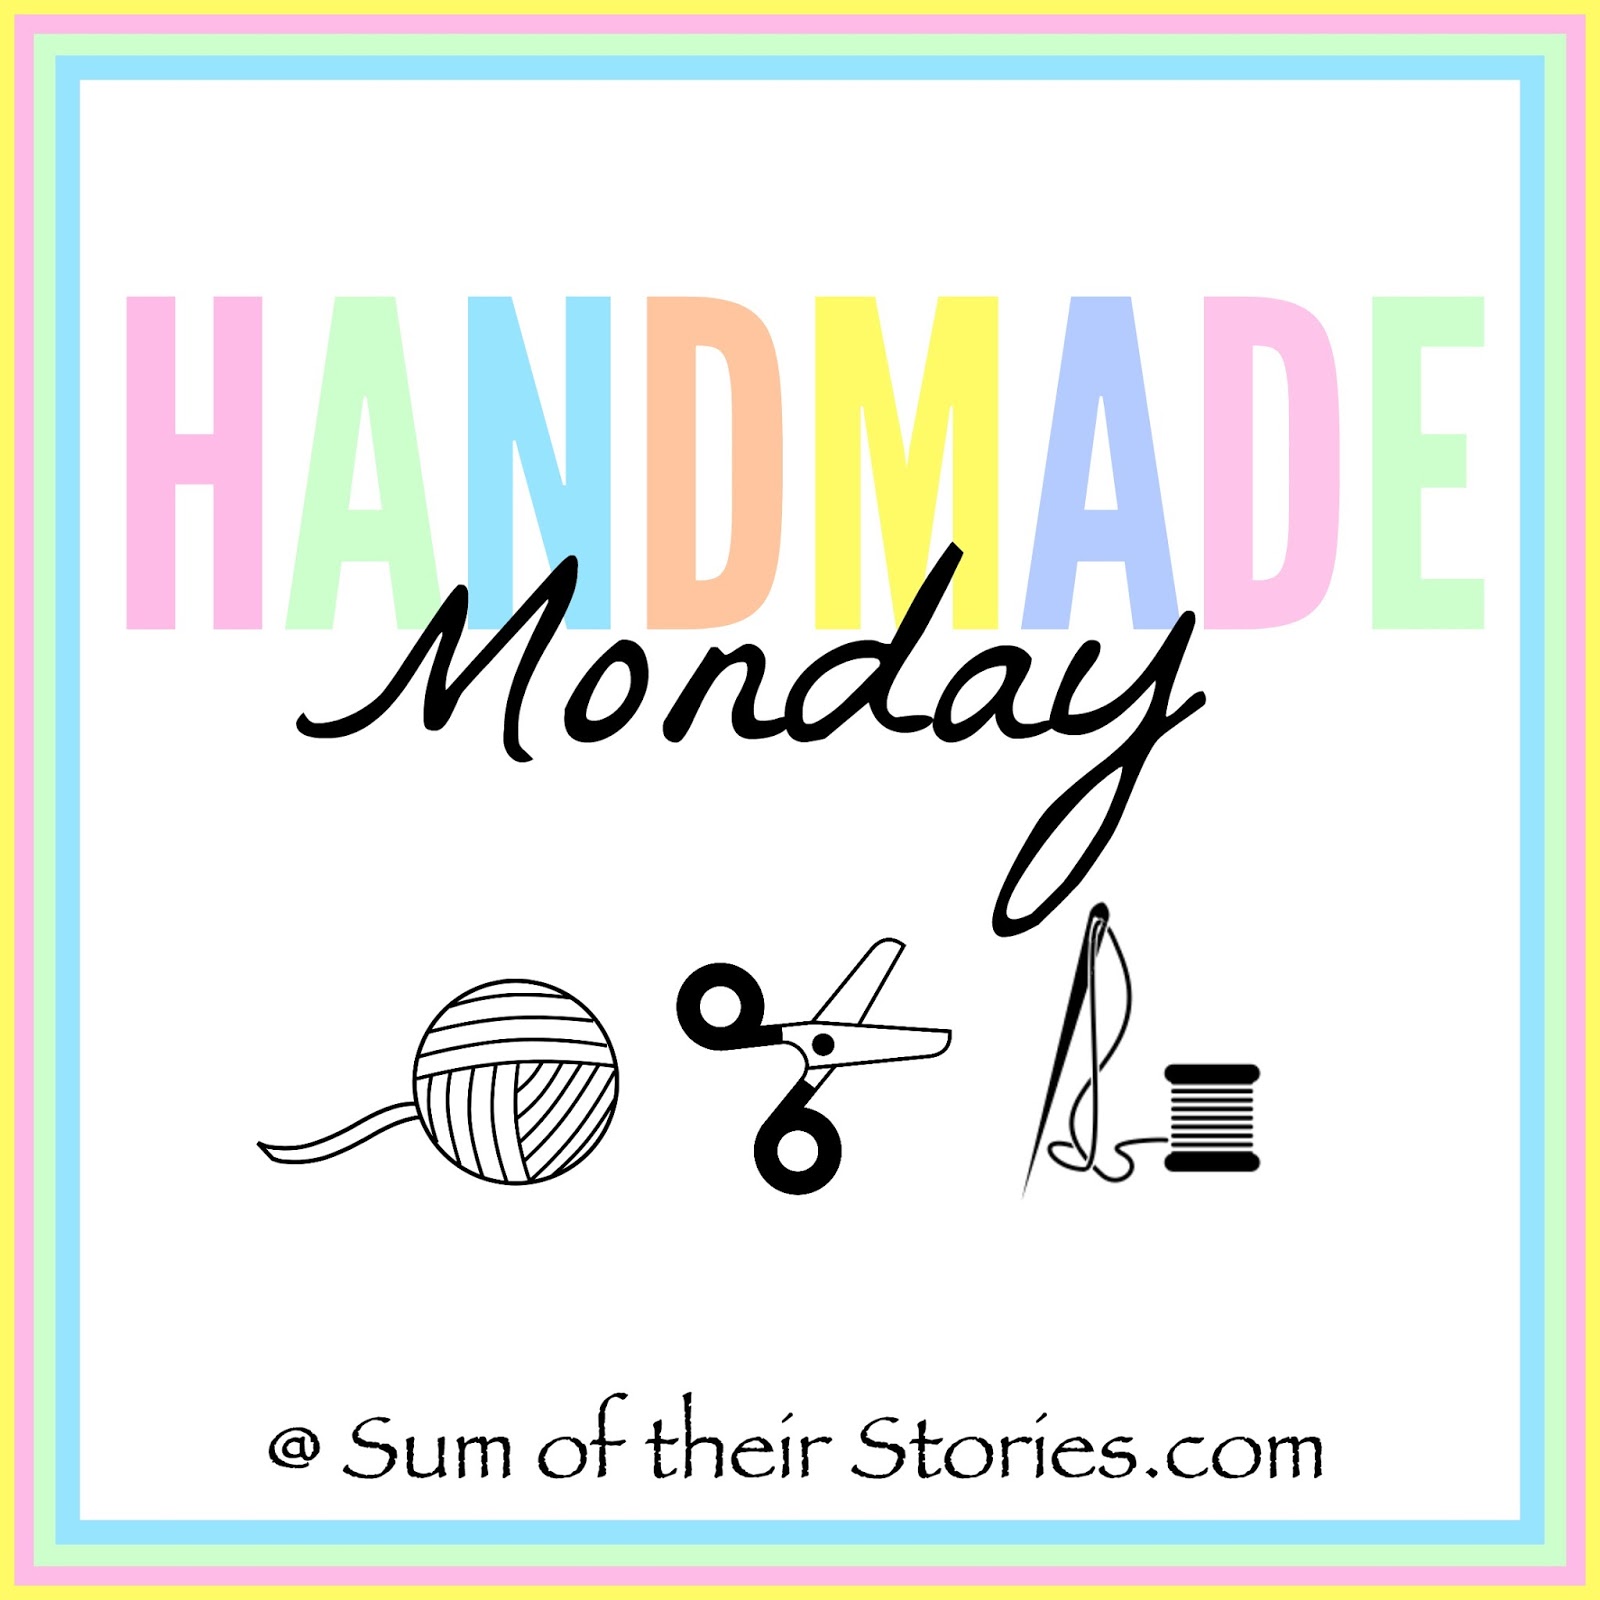 Handmade Monday